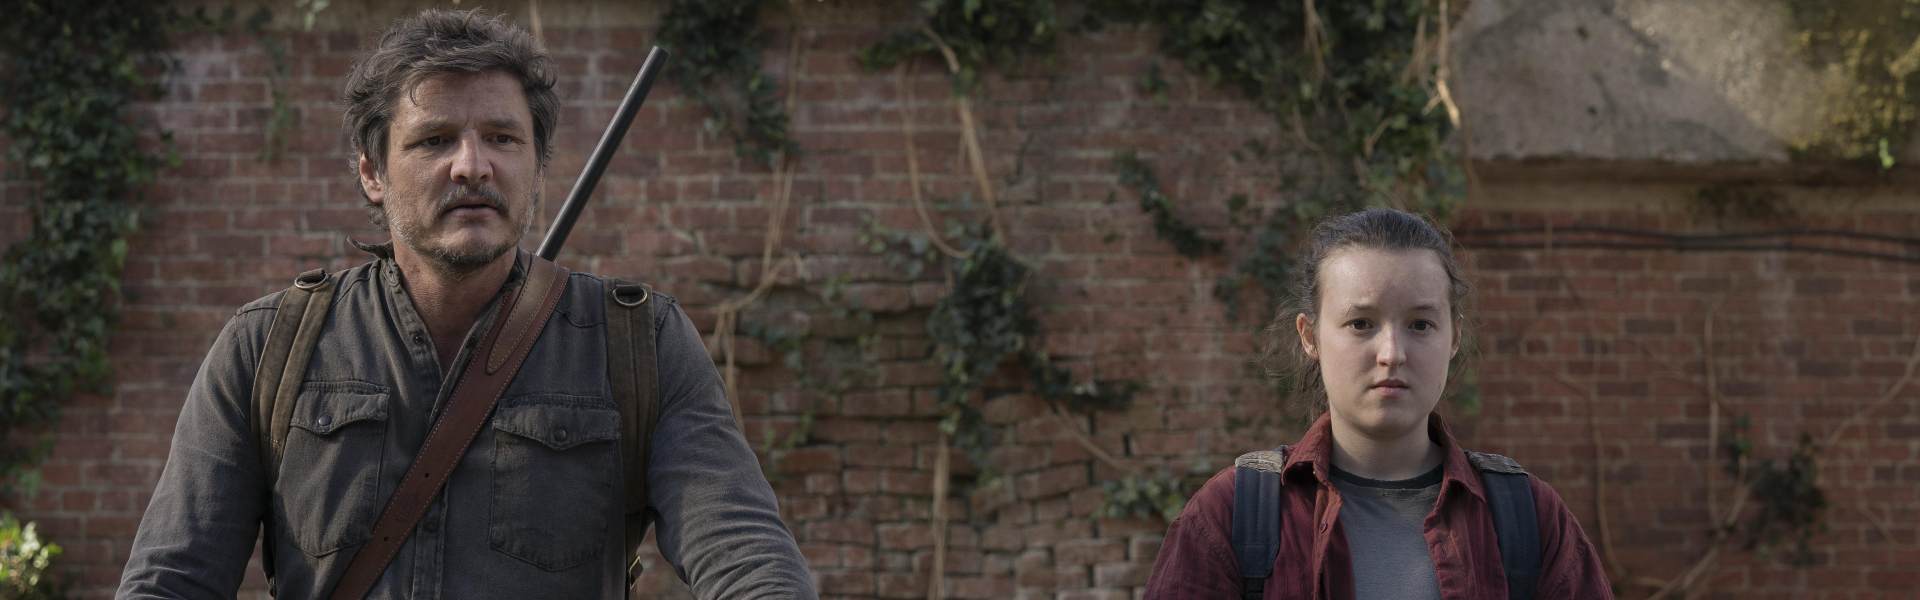 Joel (Pedro Pascal) e Ellie (Bella Ramsay) no episódio 9 de 'The Last of Us' (Crédito: HBO)